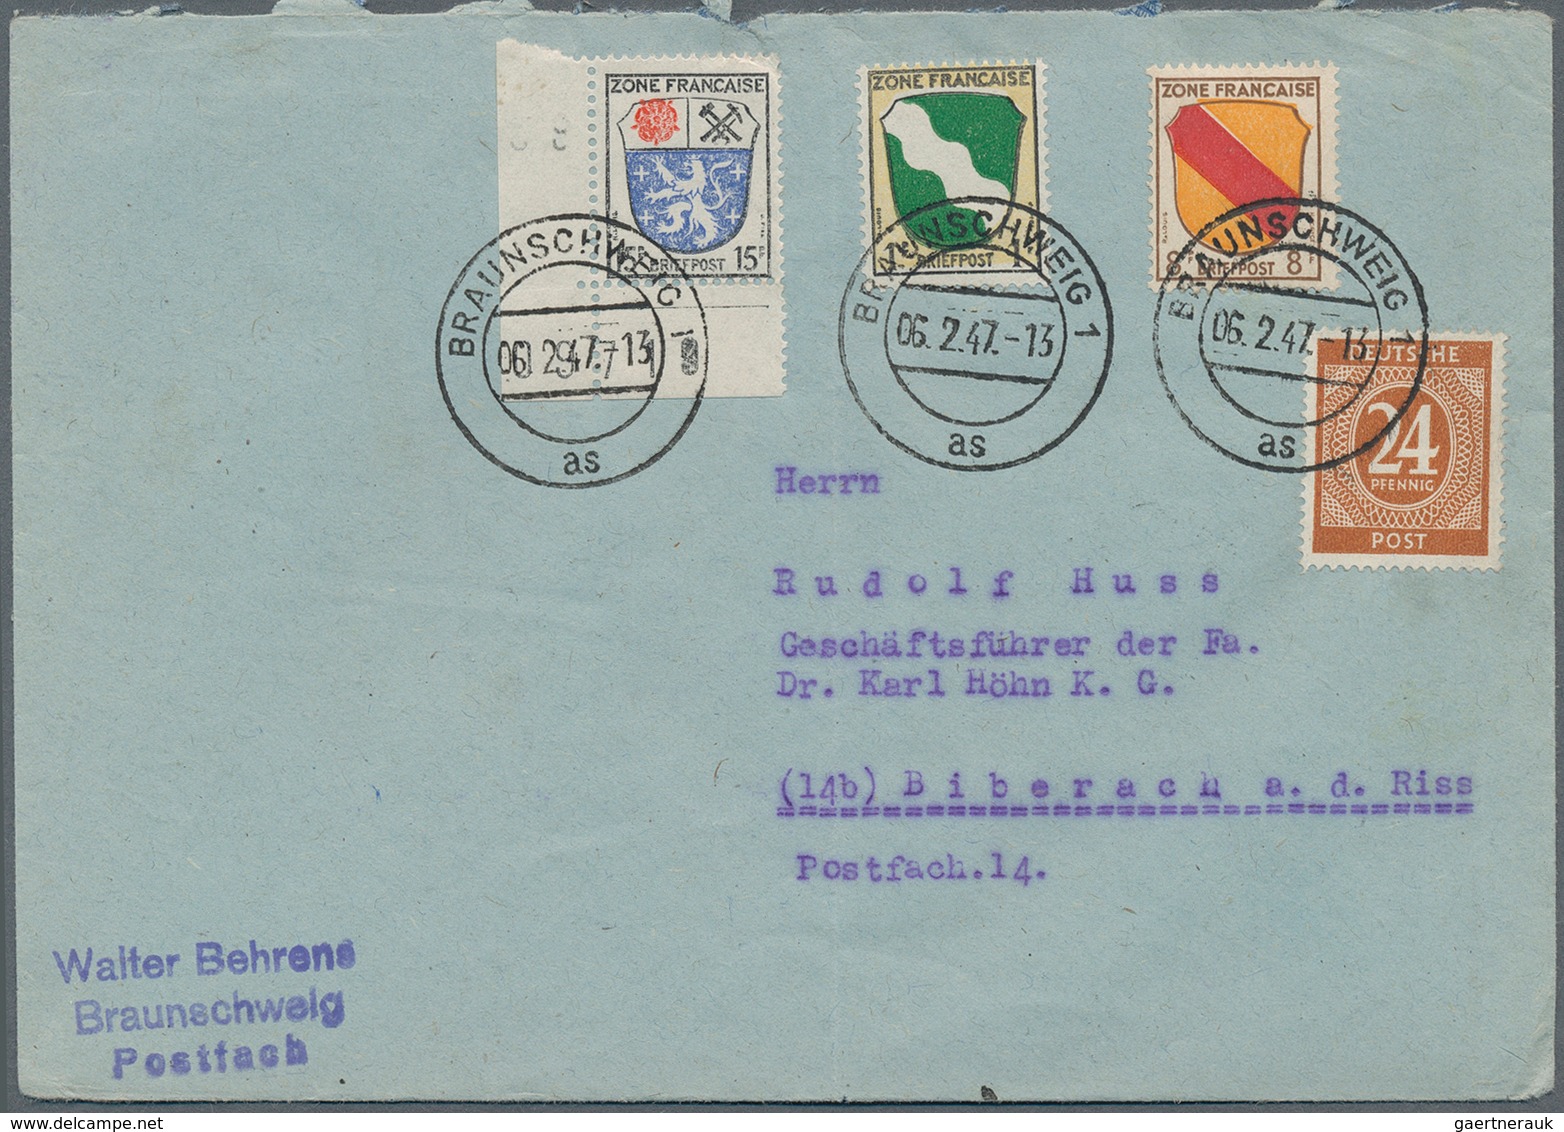 32576 Französische Zone: 1946/1949, vielseitige Partie von ca. 150 Briefen und Karten, meist gelaufene Pos